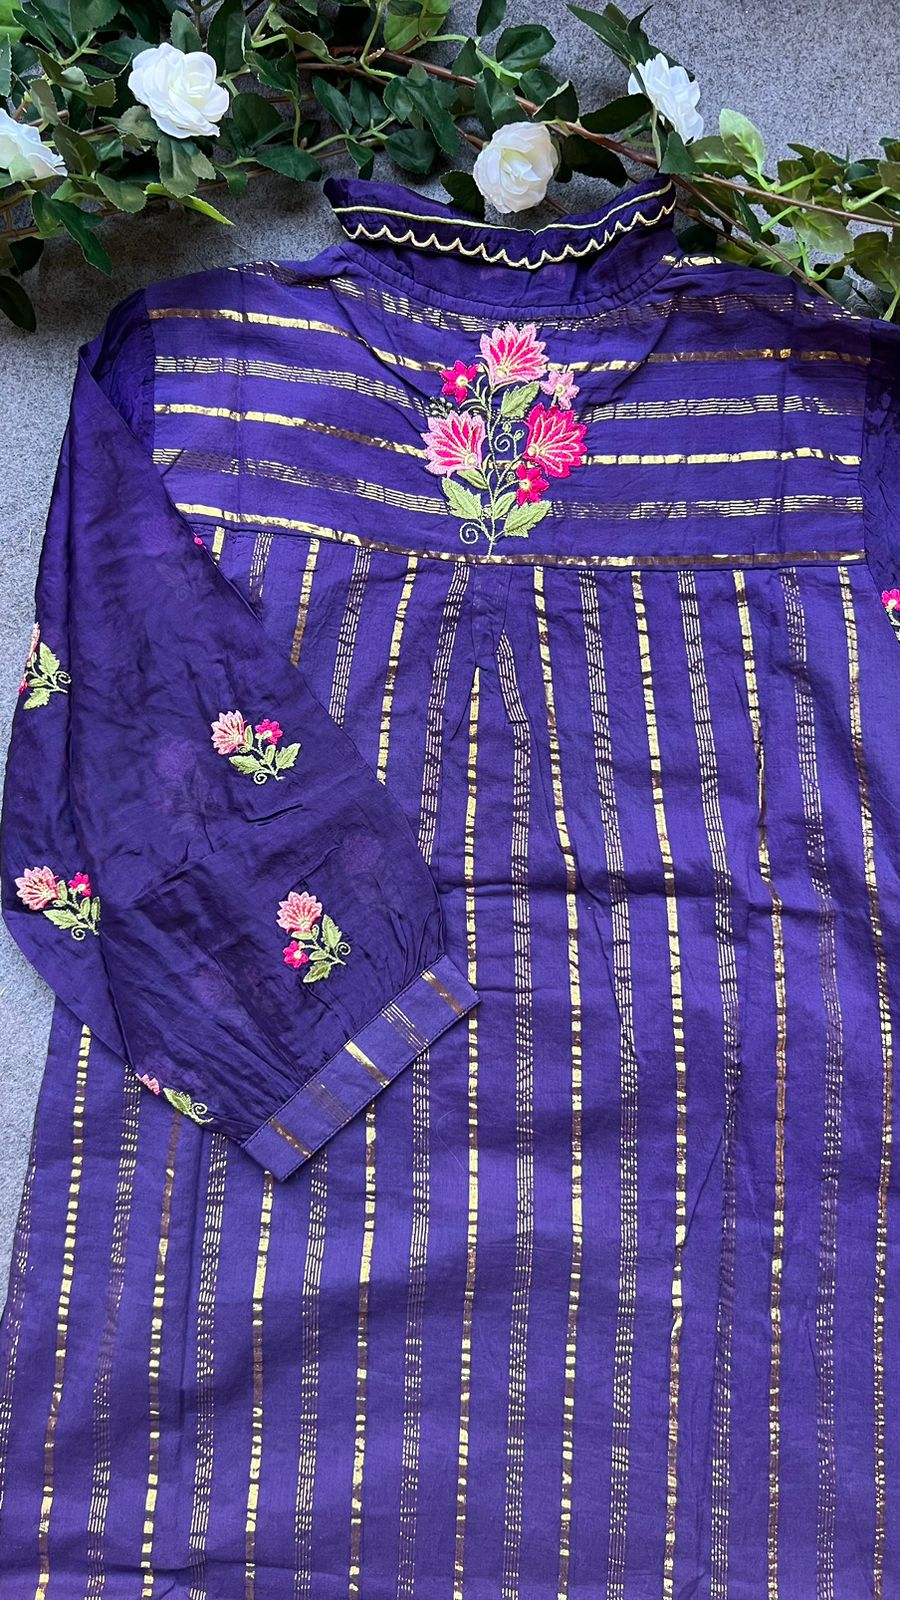 Purple stripped embroidery 2 piece kurti dress